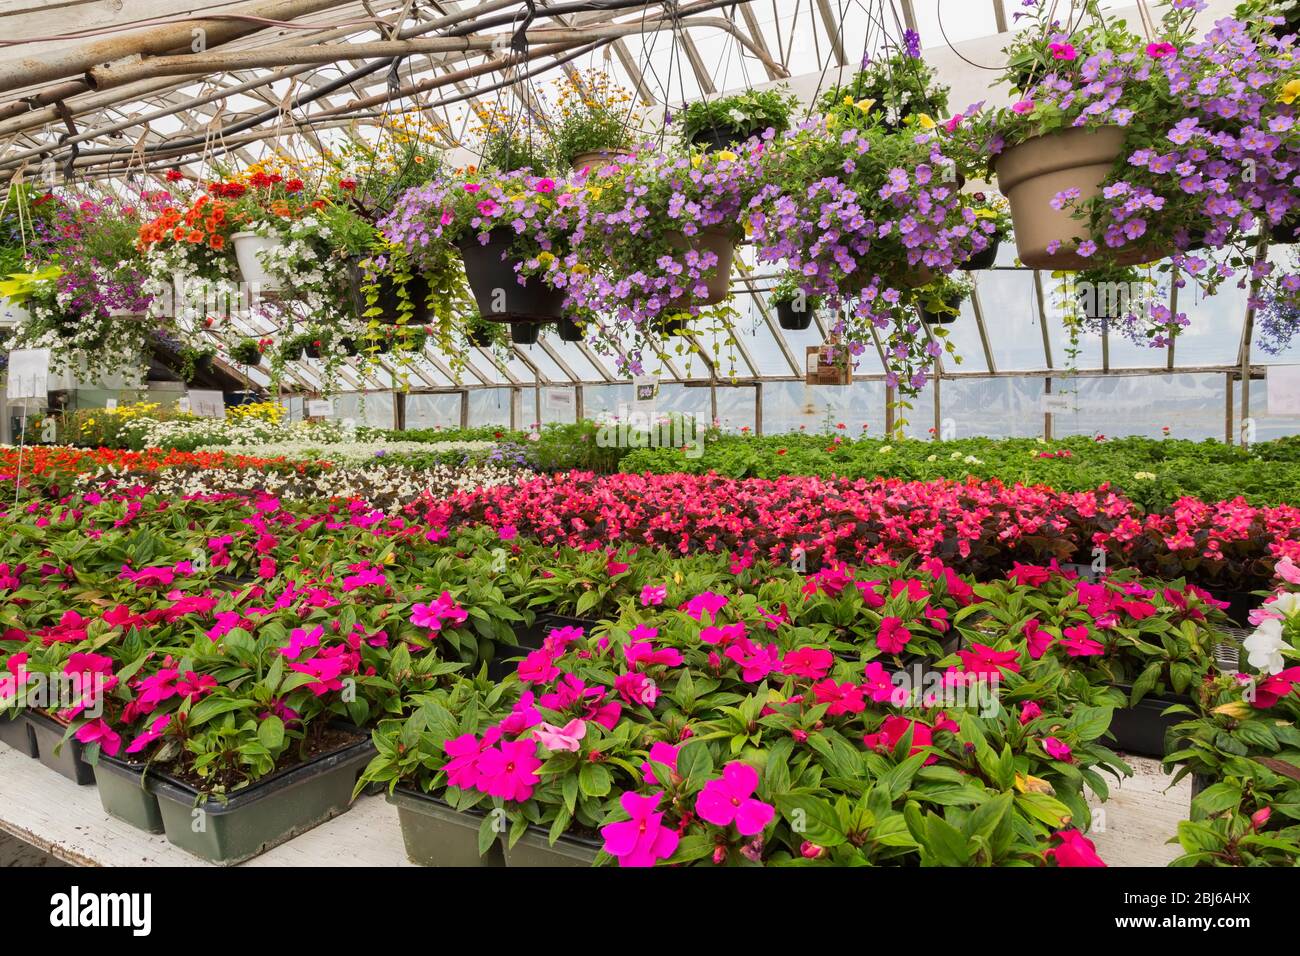 Fleurs d'été colorées, accrochées dans des paniers et des joyaux roses (Impatiens), des Begonias roses, blancs et rouges (Begonia) en serre, Québec Banque D'Images